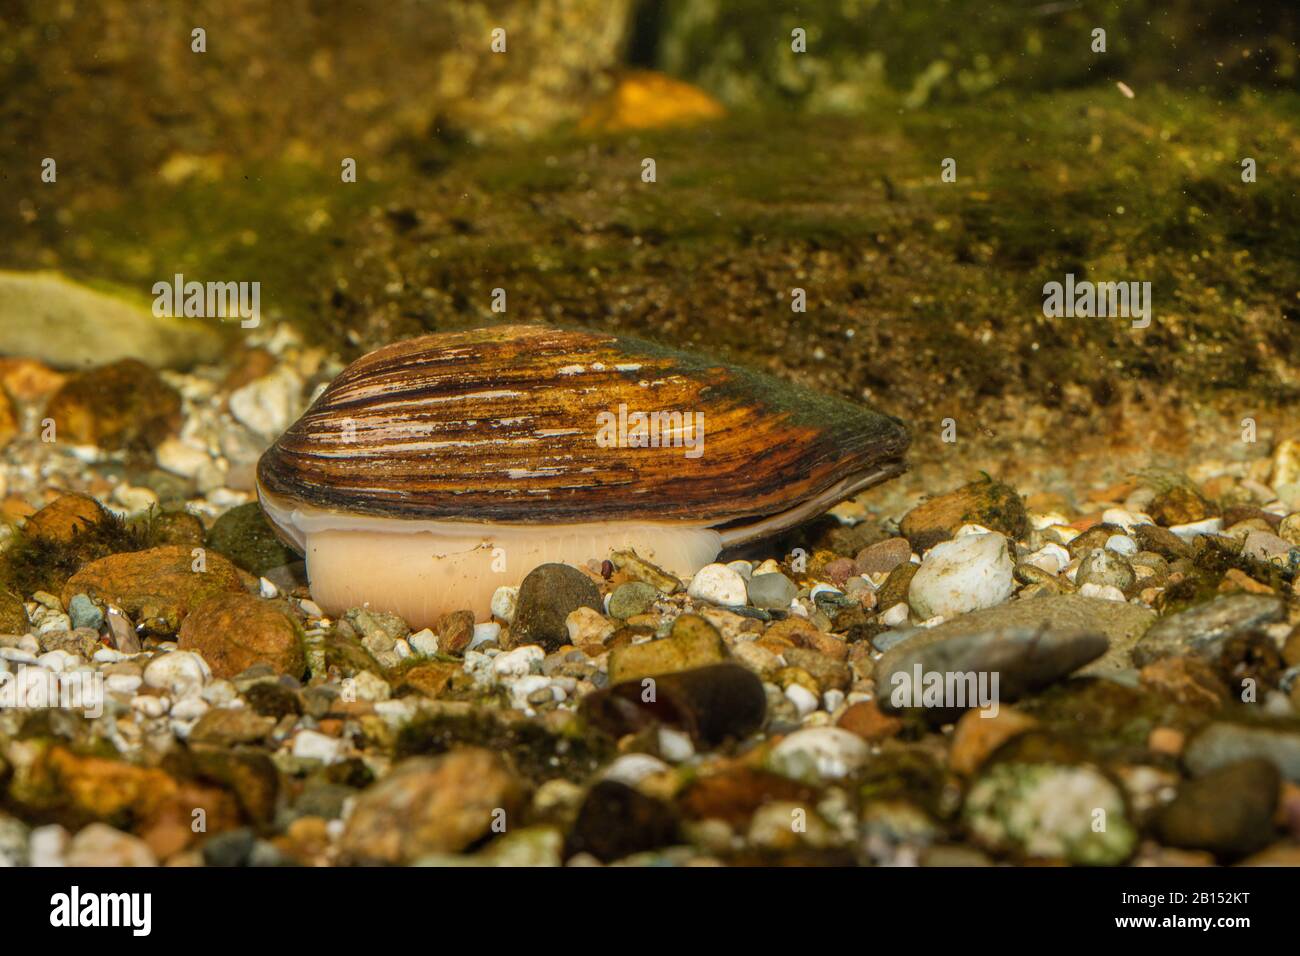 La moule commune, la moule de canard (Anodonta anatina), digue dans le sol avec son pied, Allemagne Banque D'Images